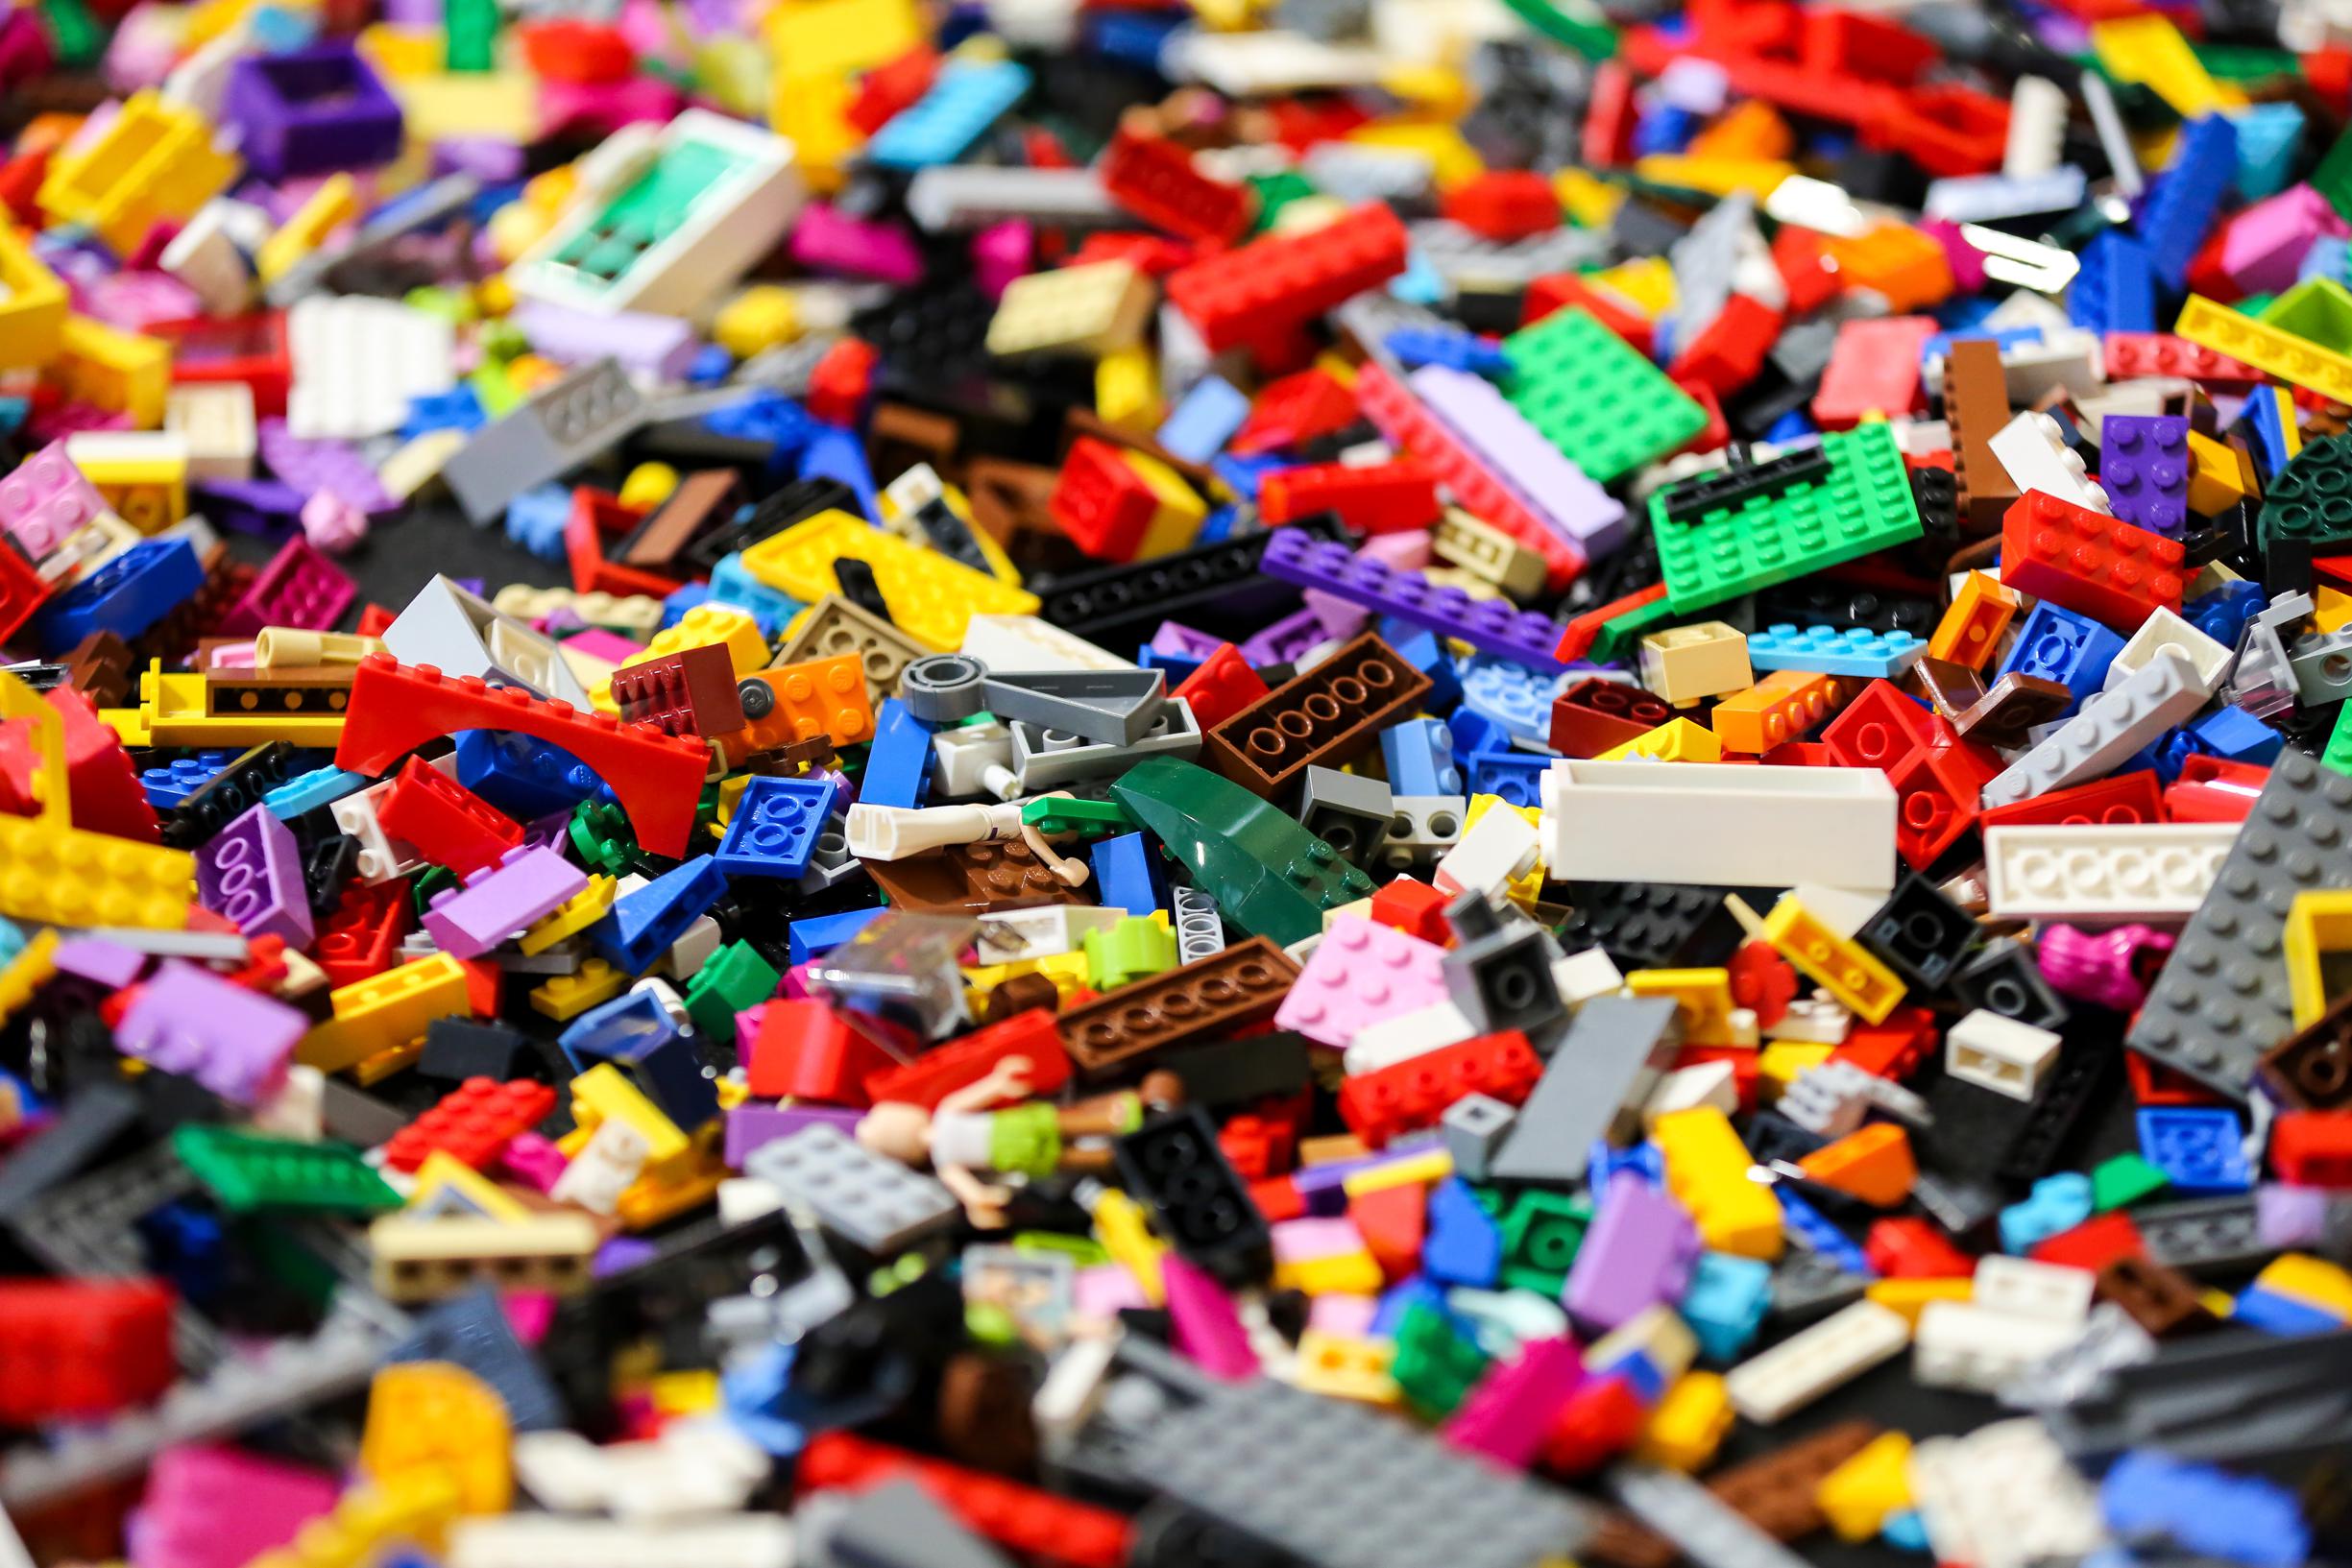 Lego-bendes wereldwijd in opmars: ze kijken wie duurste tweedehandsdozen en komen je dan beroven | Het Nieuwsblad Mobile